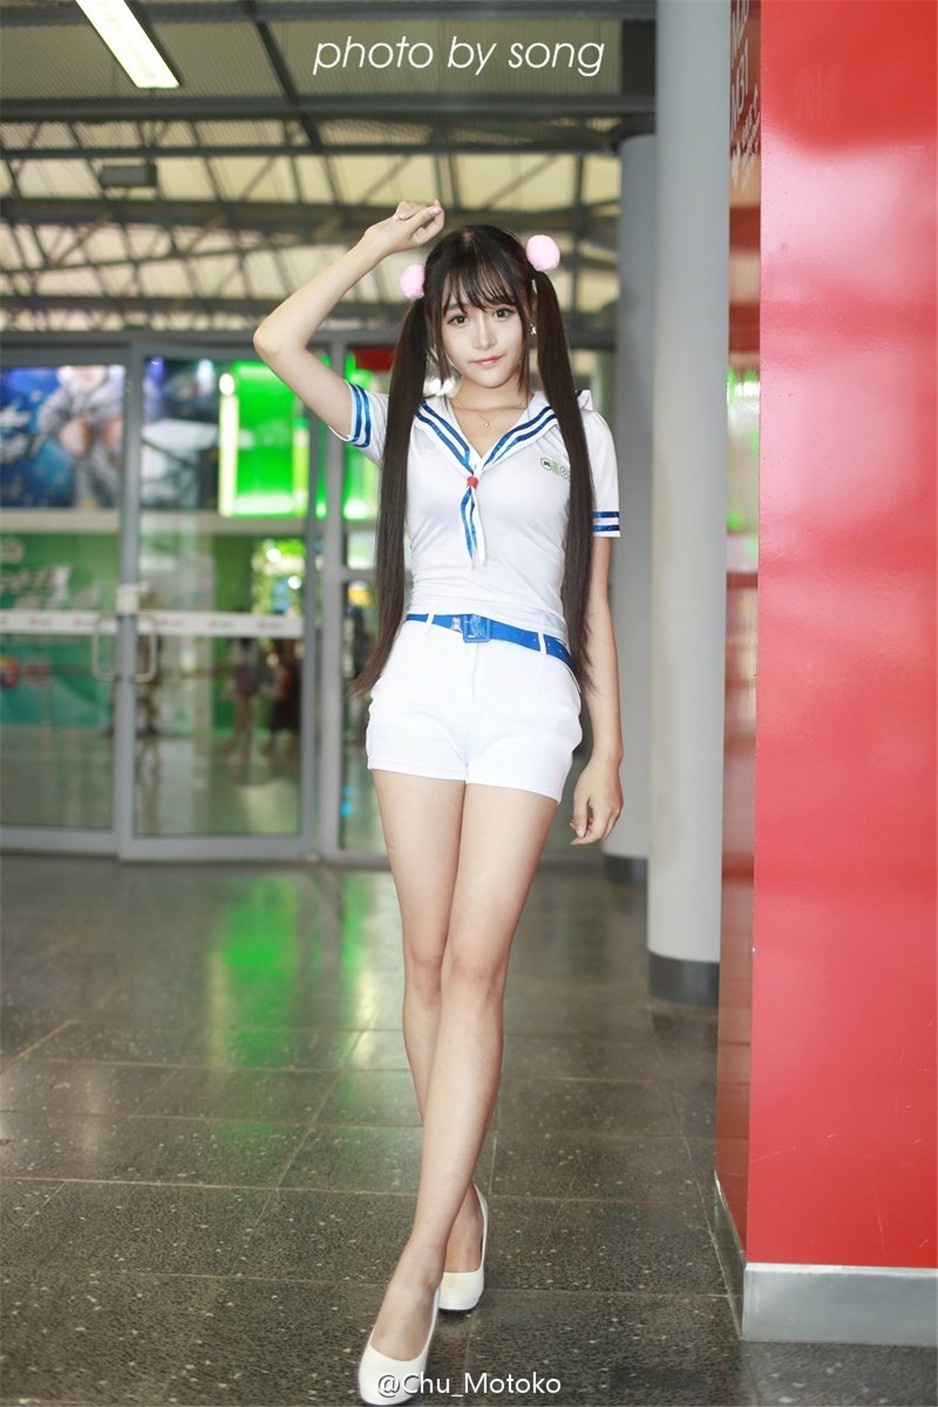 清纯学生妹Motoko素素迷人长腿图片